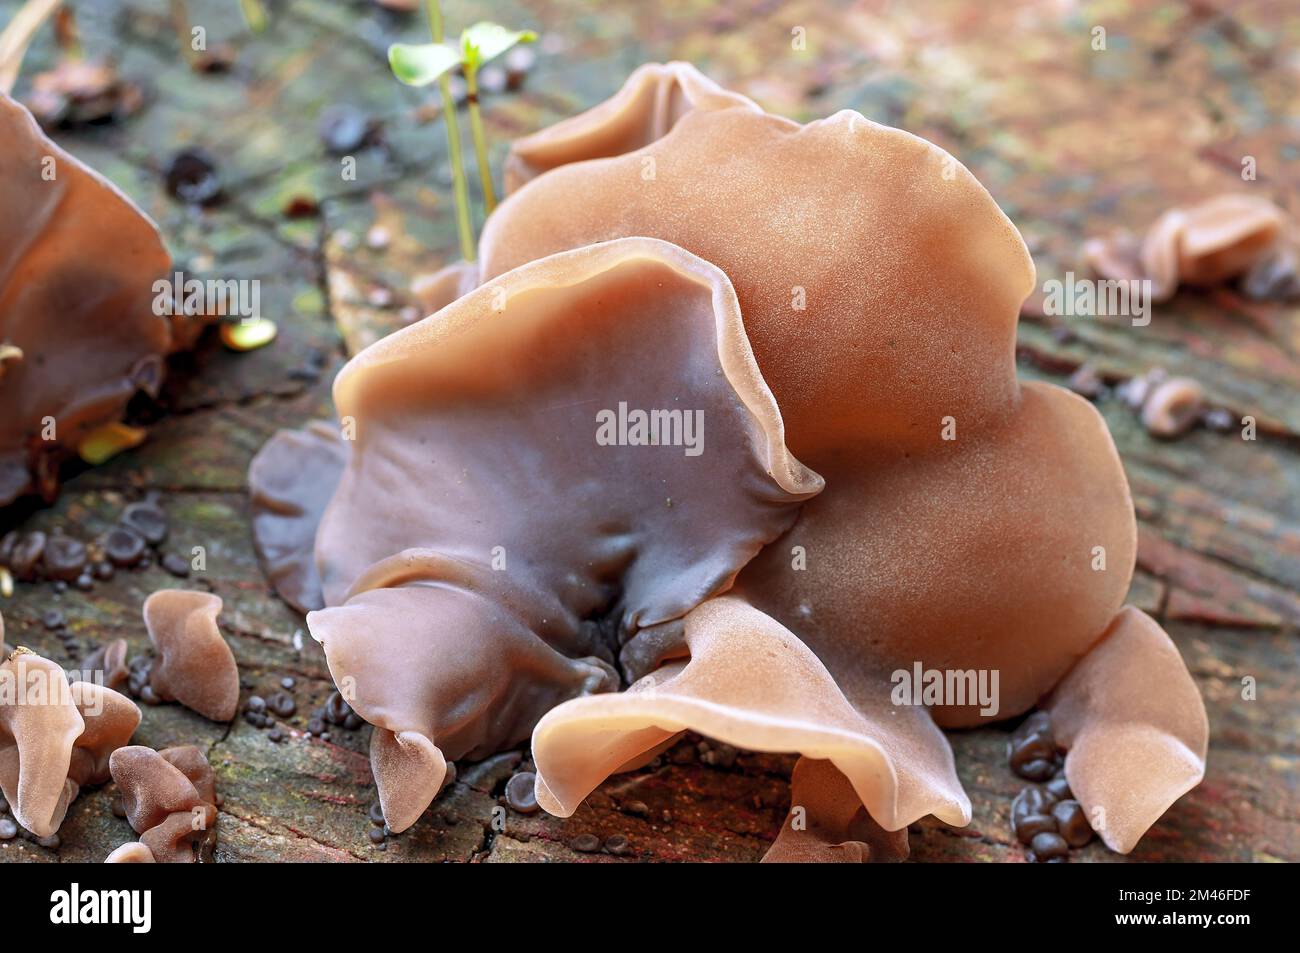 A growth of mushroom Auricularia auricula Judae on a wooden log Stock Photo